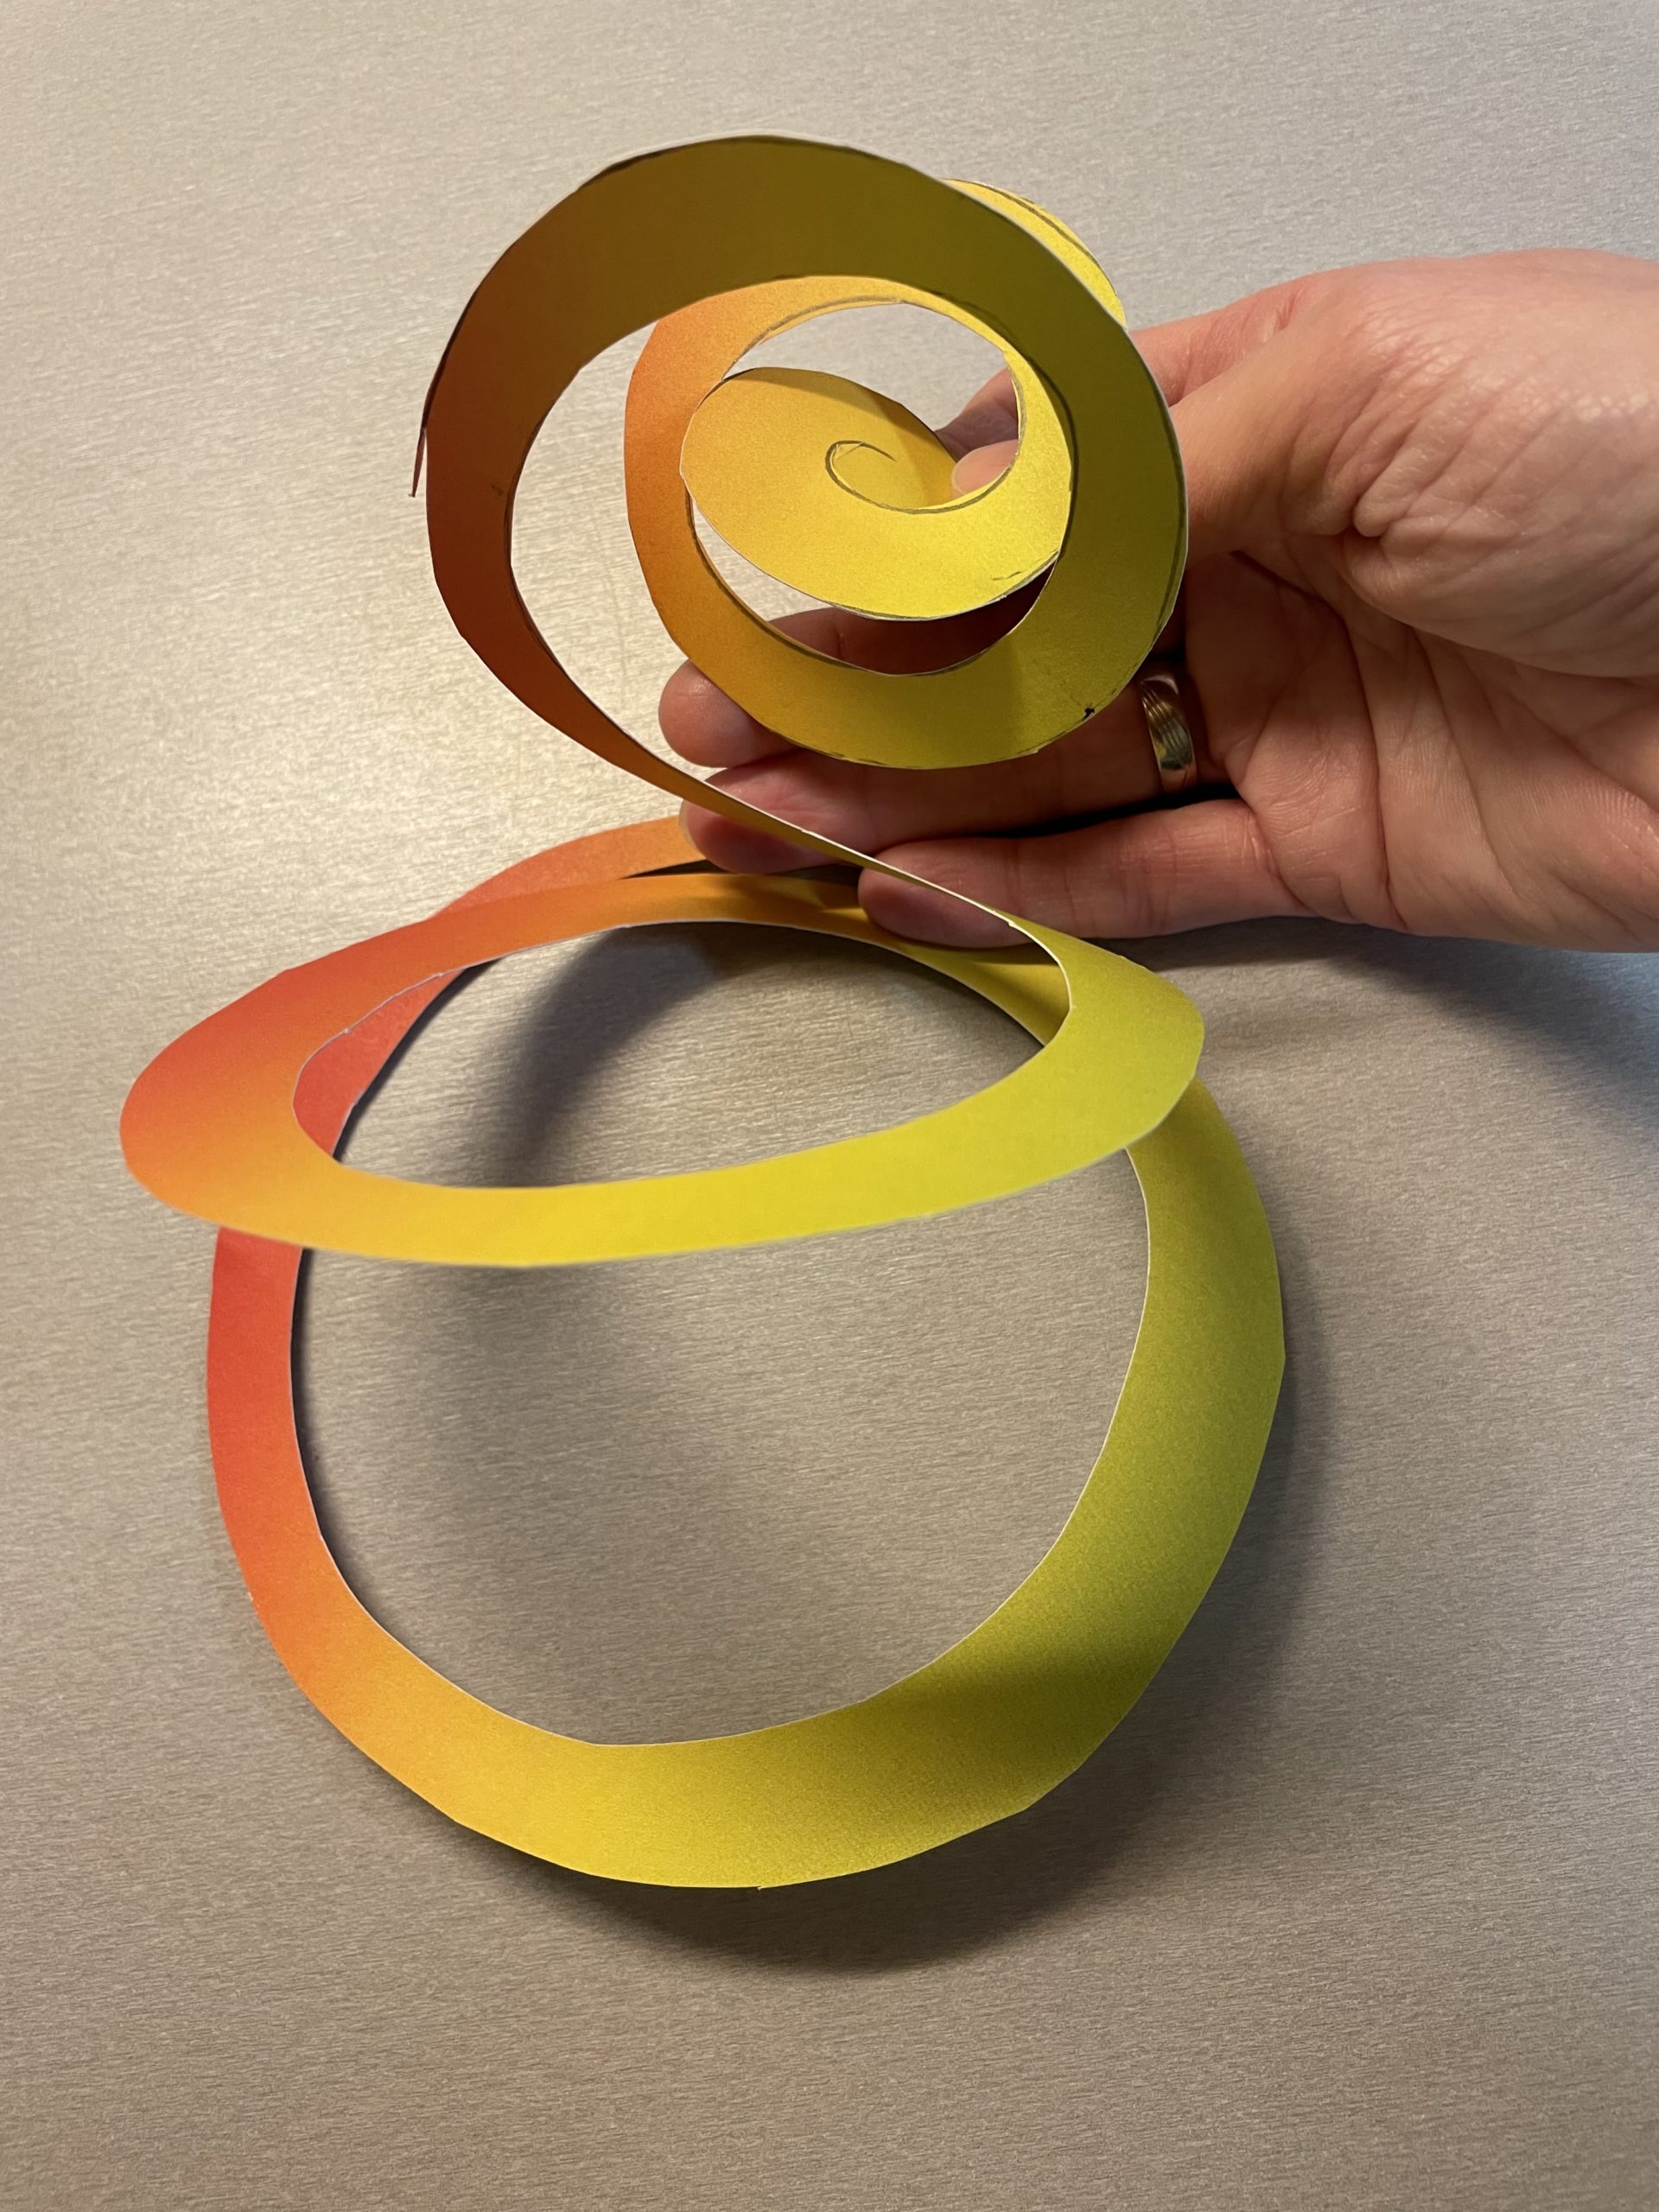 Bild zum Schritt 7 für das Bastel- und DIY-Abenteuer für Kinder: 'Hängt die Spirale am mittleren Punkt auf. So hängt sie...'